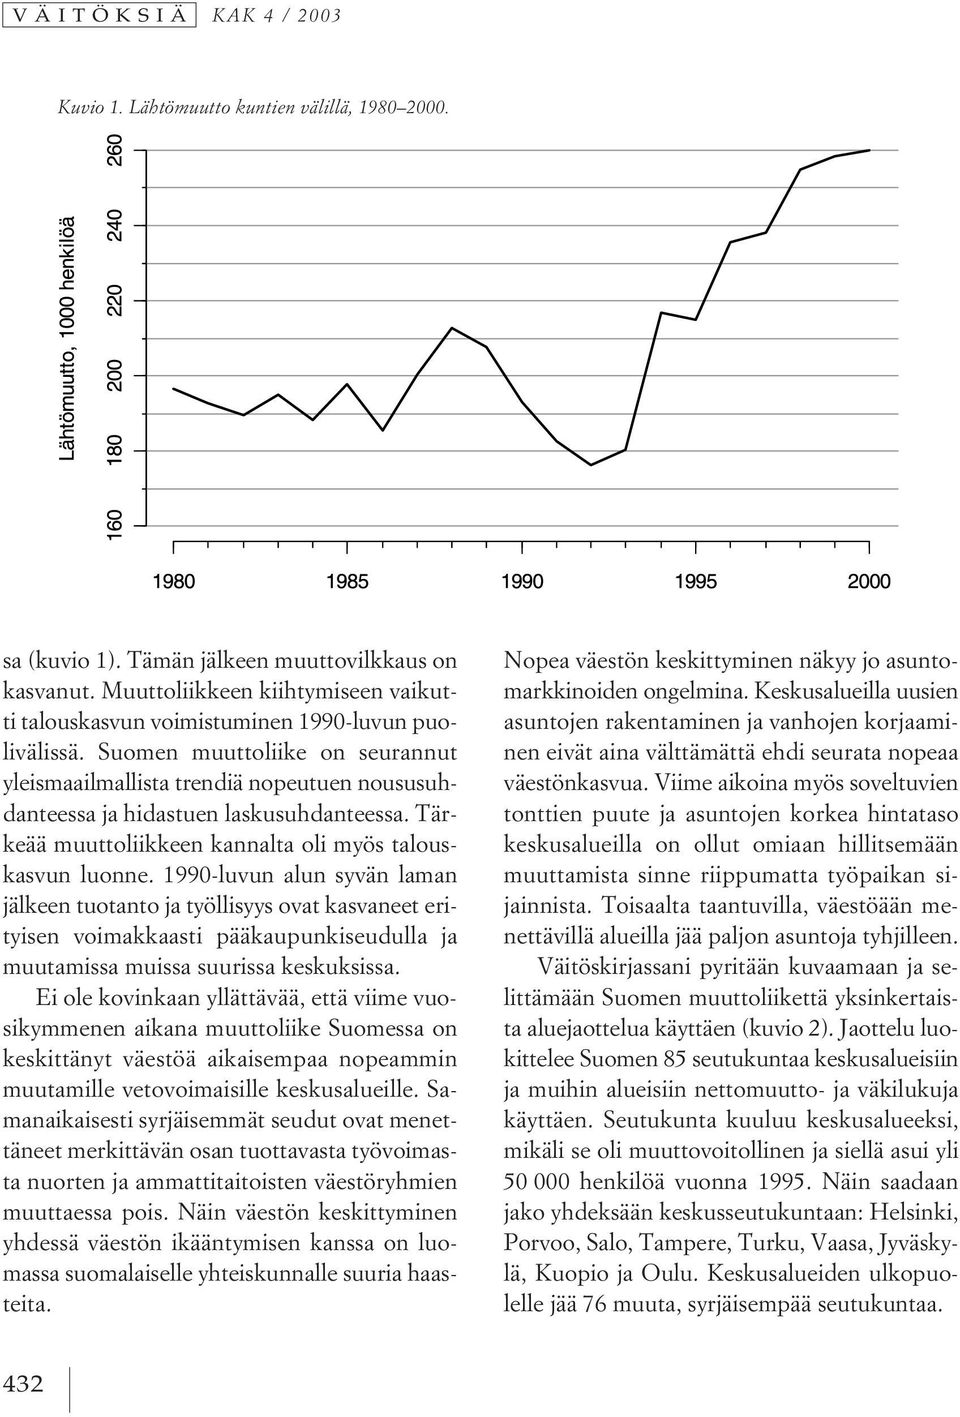 Suomen muuttoliike on seurannut yleismaailmallista trendiä nopeutuen noususuhdanteessa ja hidastuen laskusuhdanteessa. Tärkeää muuttoliikkeen kannalta oli myös talouskasvun luonne.